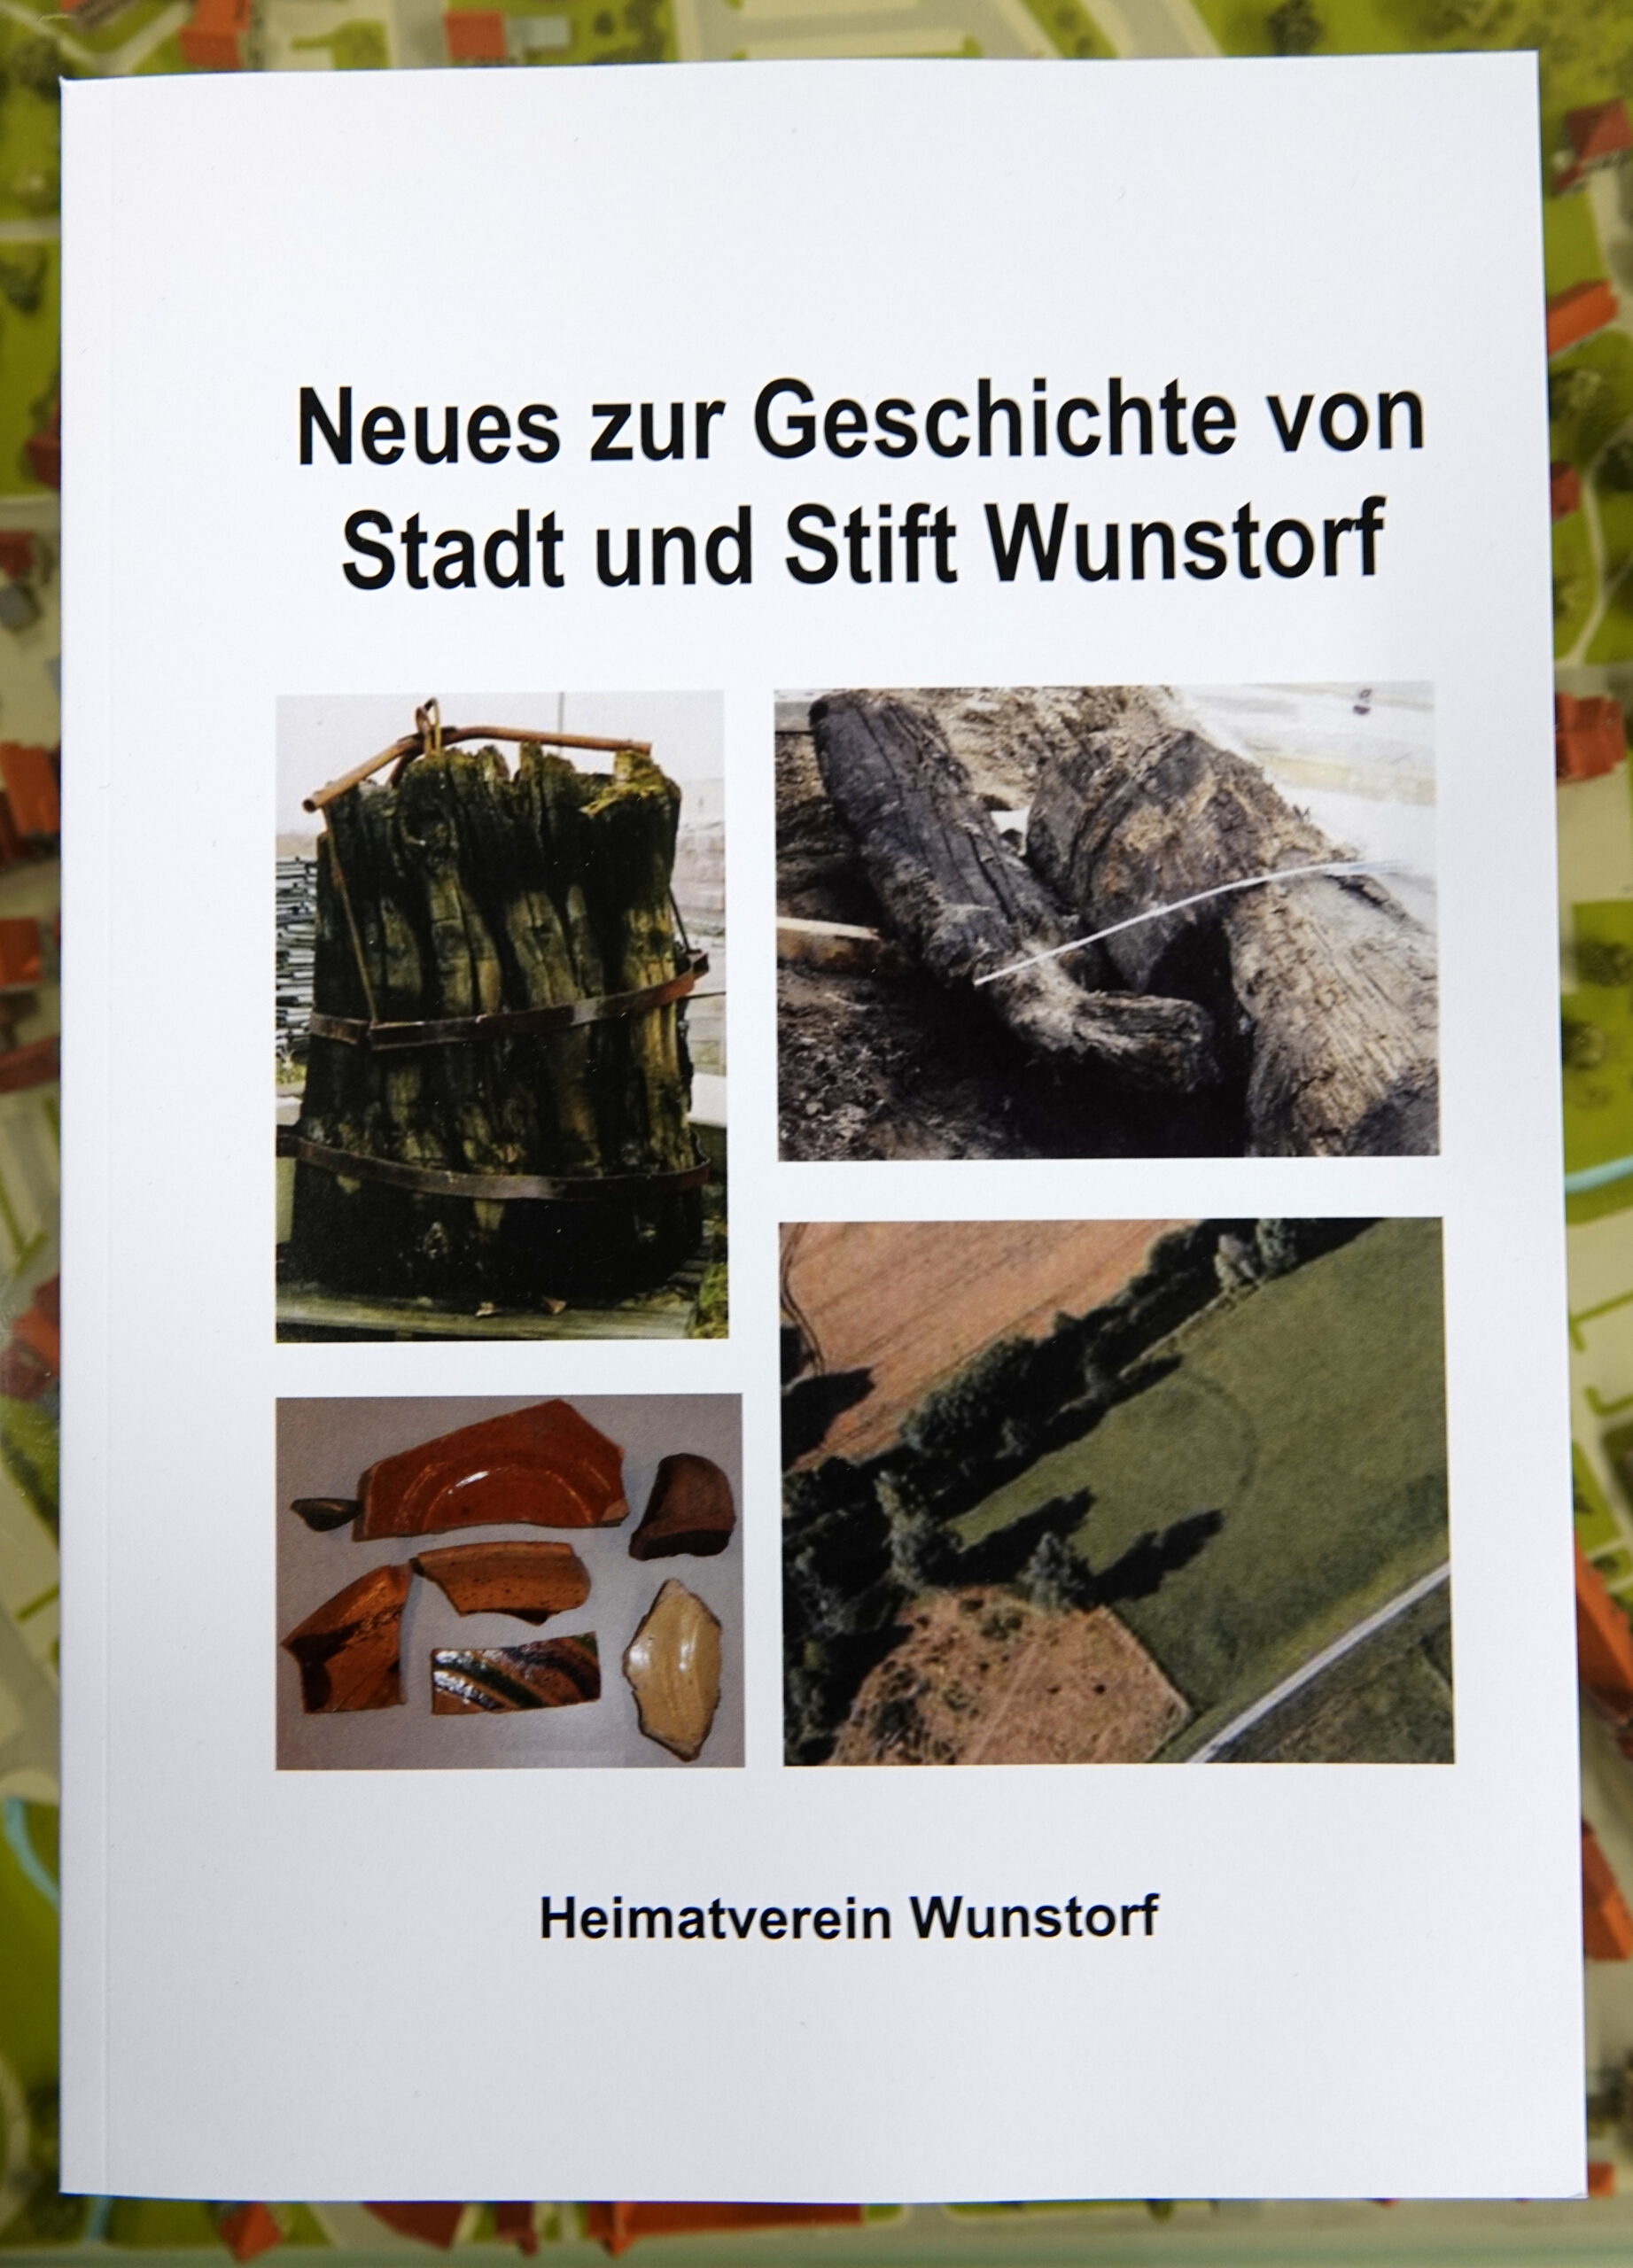 Neues zur Geschichte von Stadt und Stift Wunstorf 2018